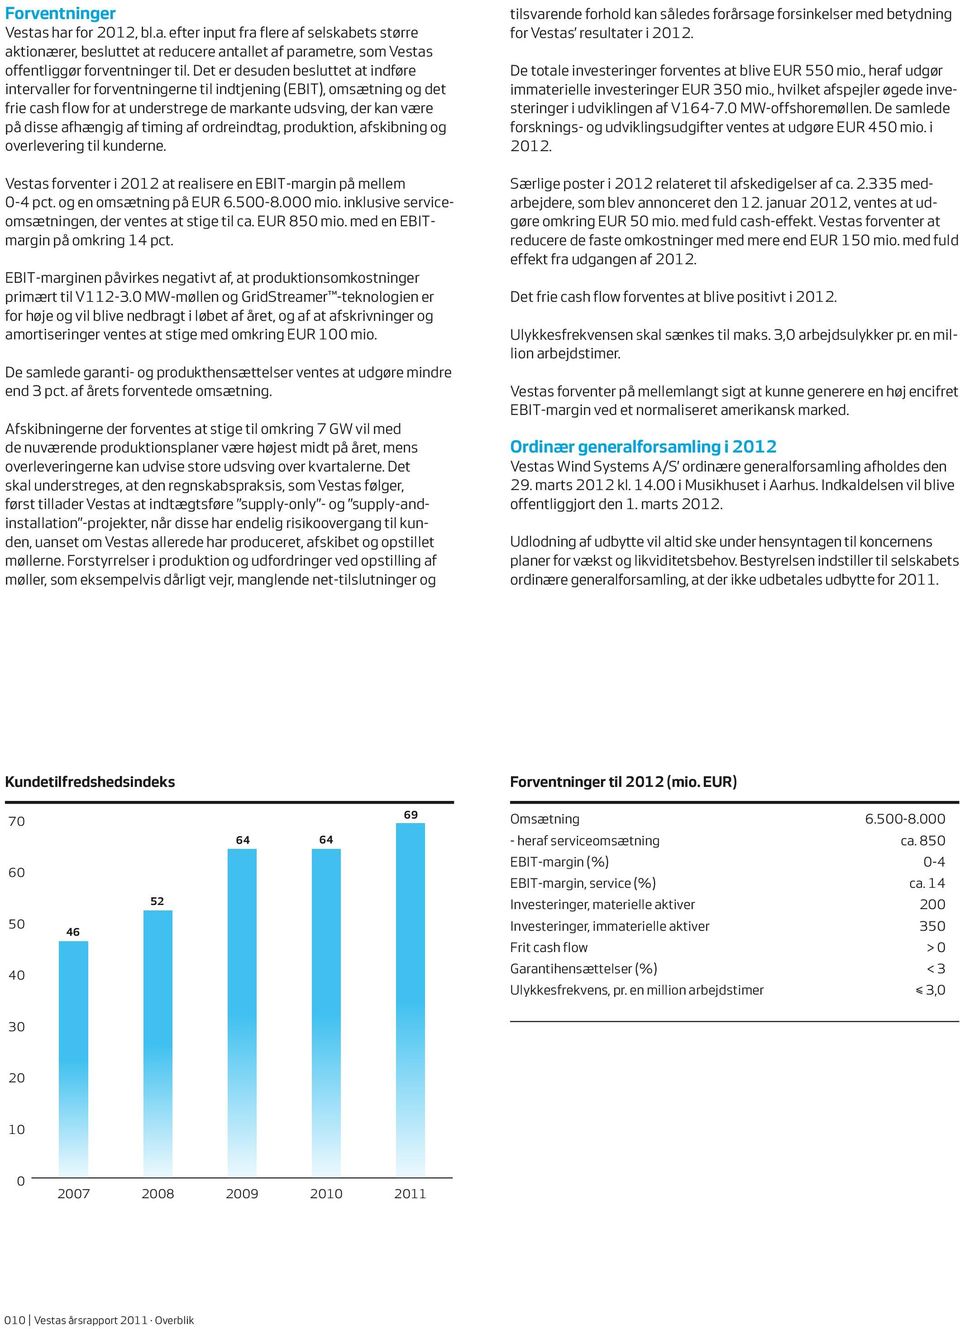 timing af ordreindtag, produktion, afskibning og overlevering til kunderne. Vestas forventer i 2012 at realisere en EBIT-margin på mellem 0-4 pct. og en omsætning på EUR 6.500-8.000 mio.